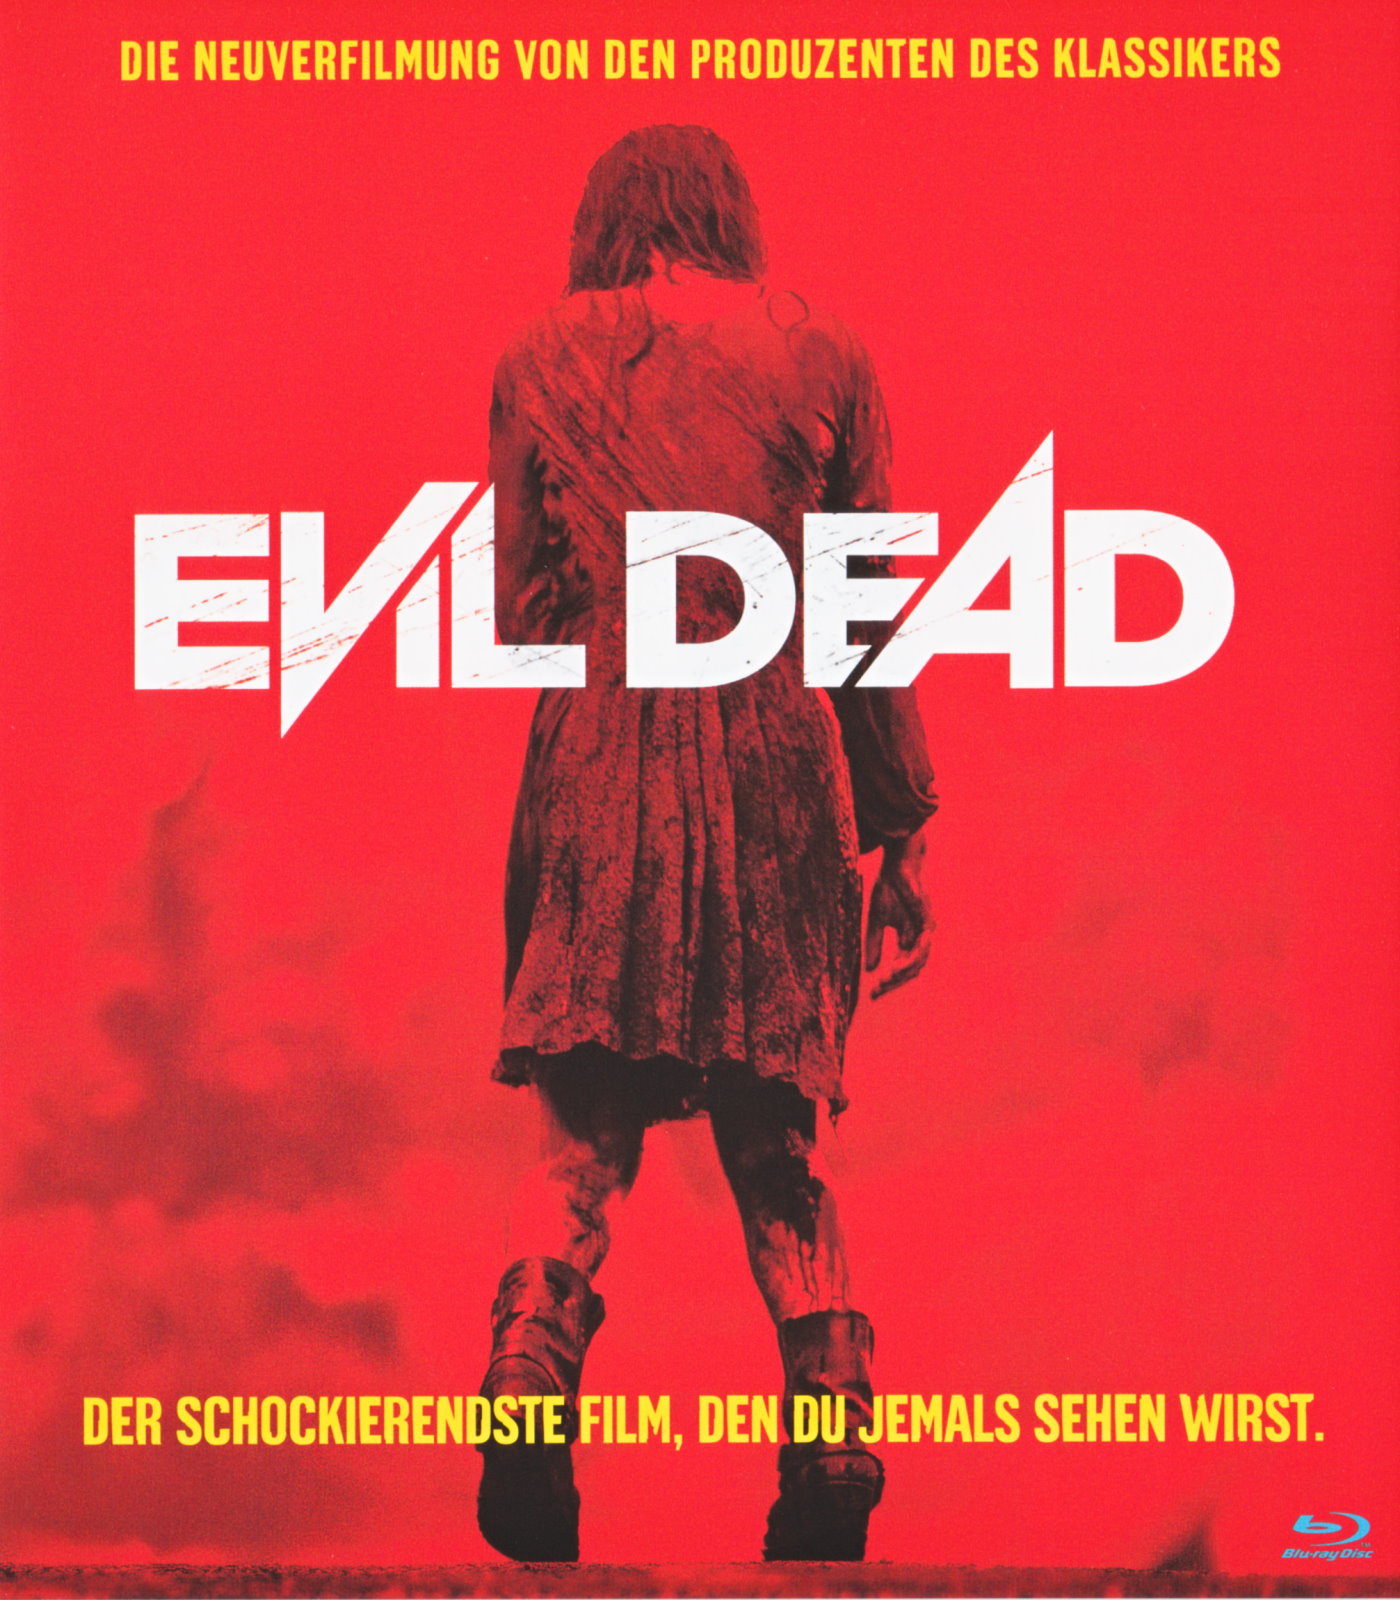 Cover - Evil Dead.jpg